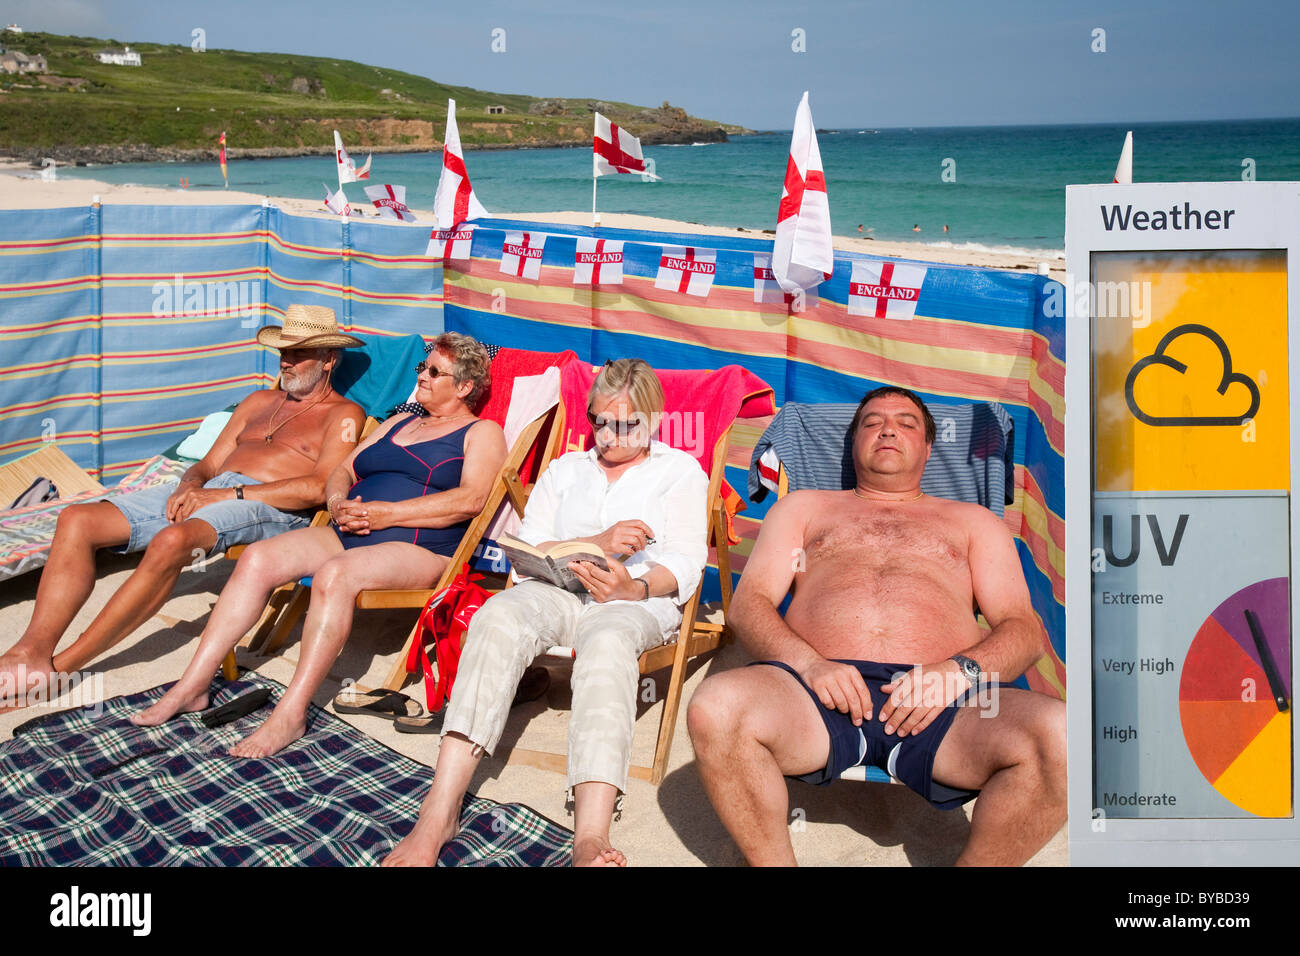 Les partisans de l'Angleterre de la coupe du monde à bronzer sur la plage à St Ives, Cornwall, UK, avec un panneau d'avertissement UV. Banque D'Images